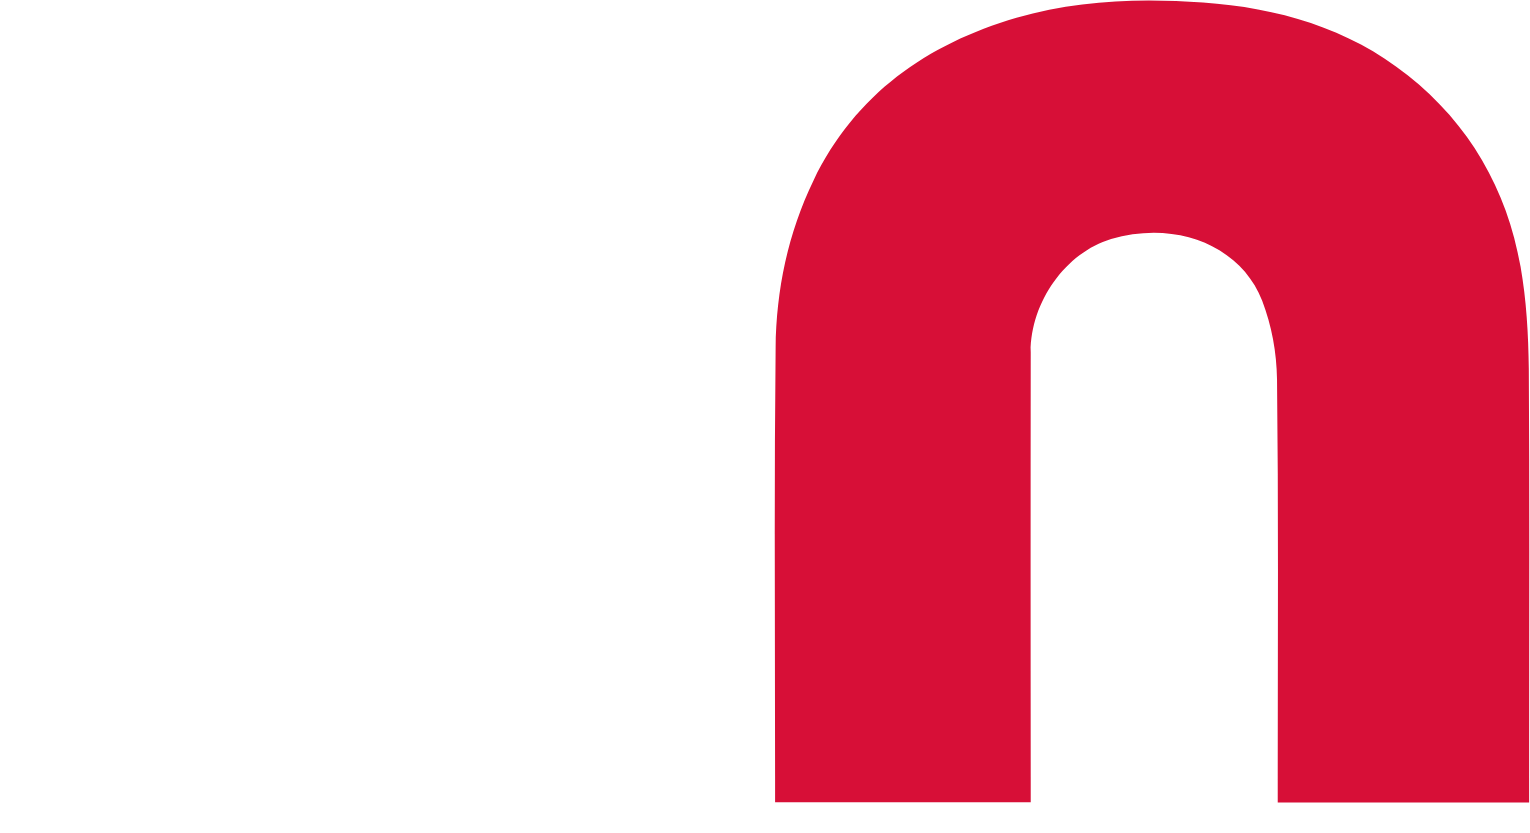 secunet logo for dark backgrounds (transparent PNG)